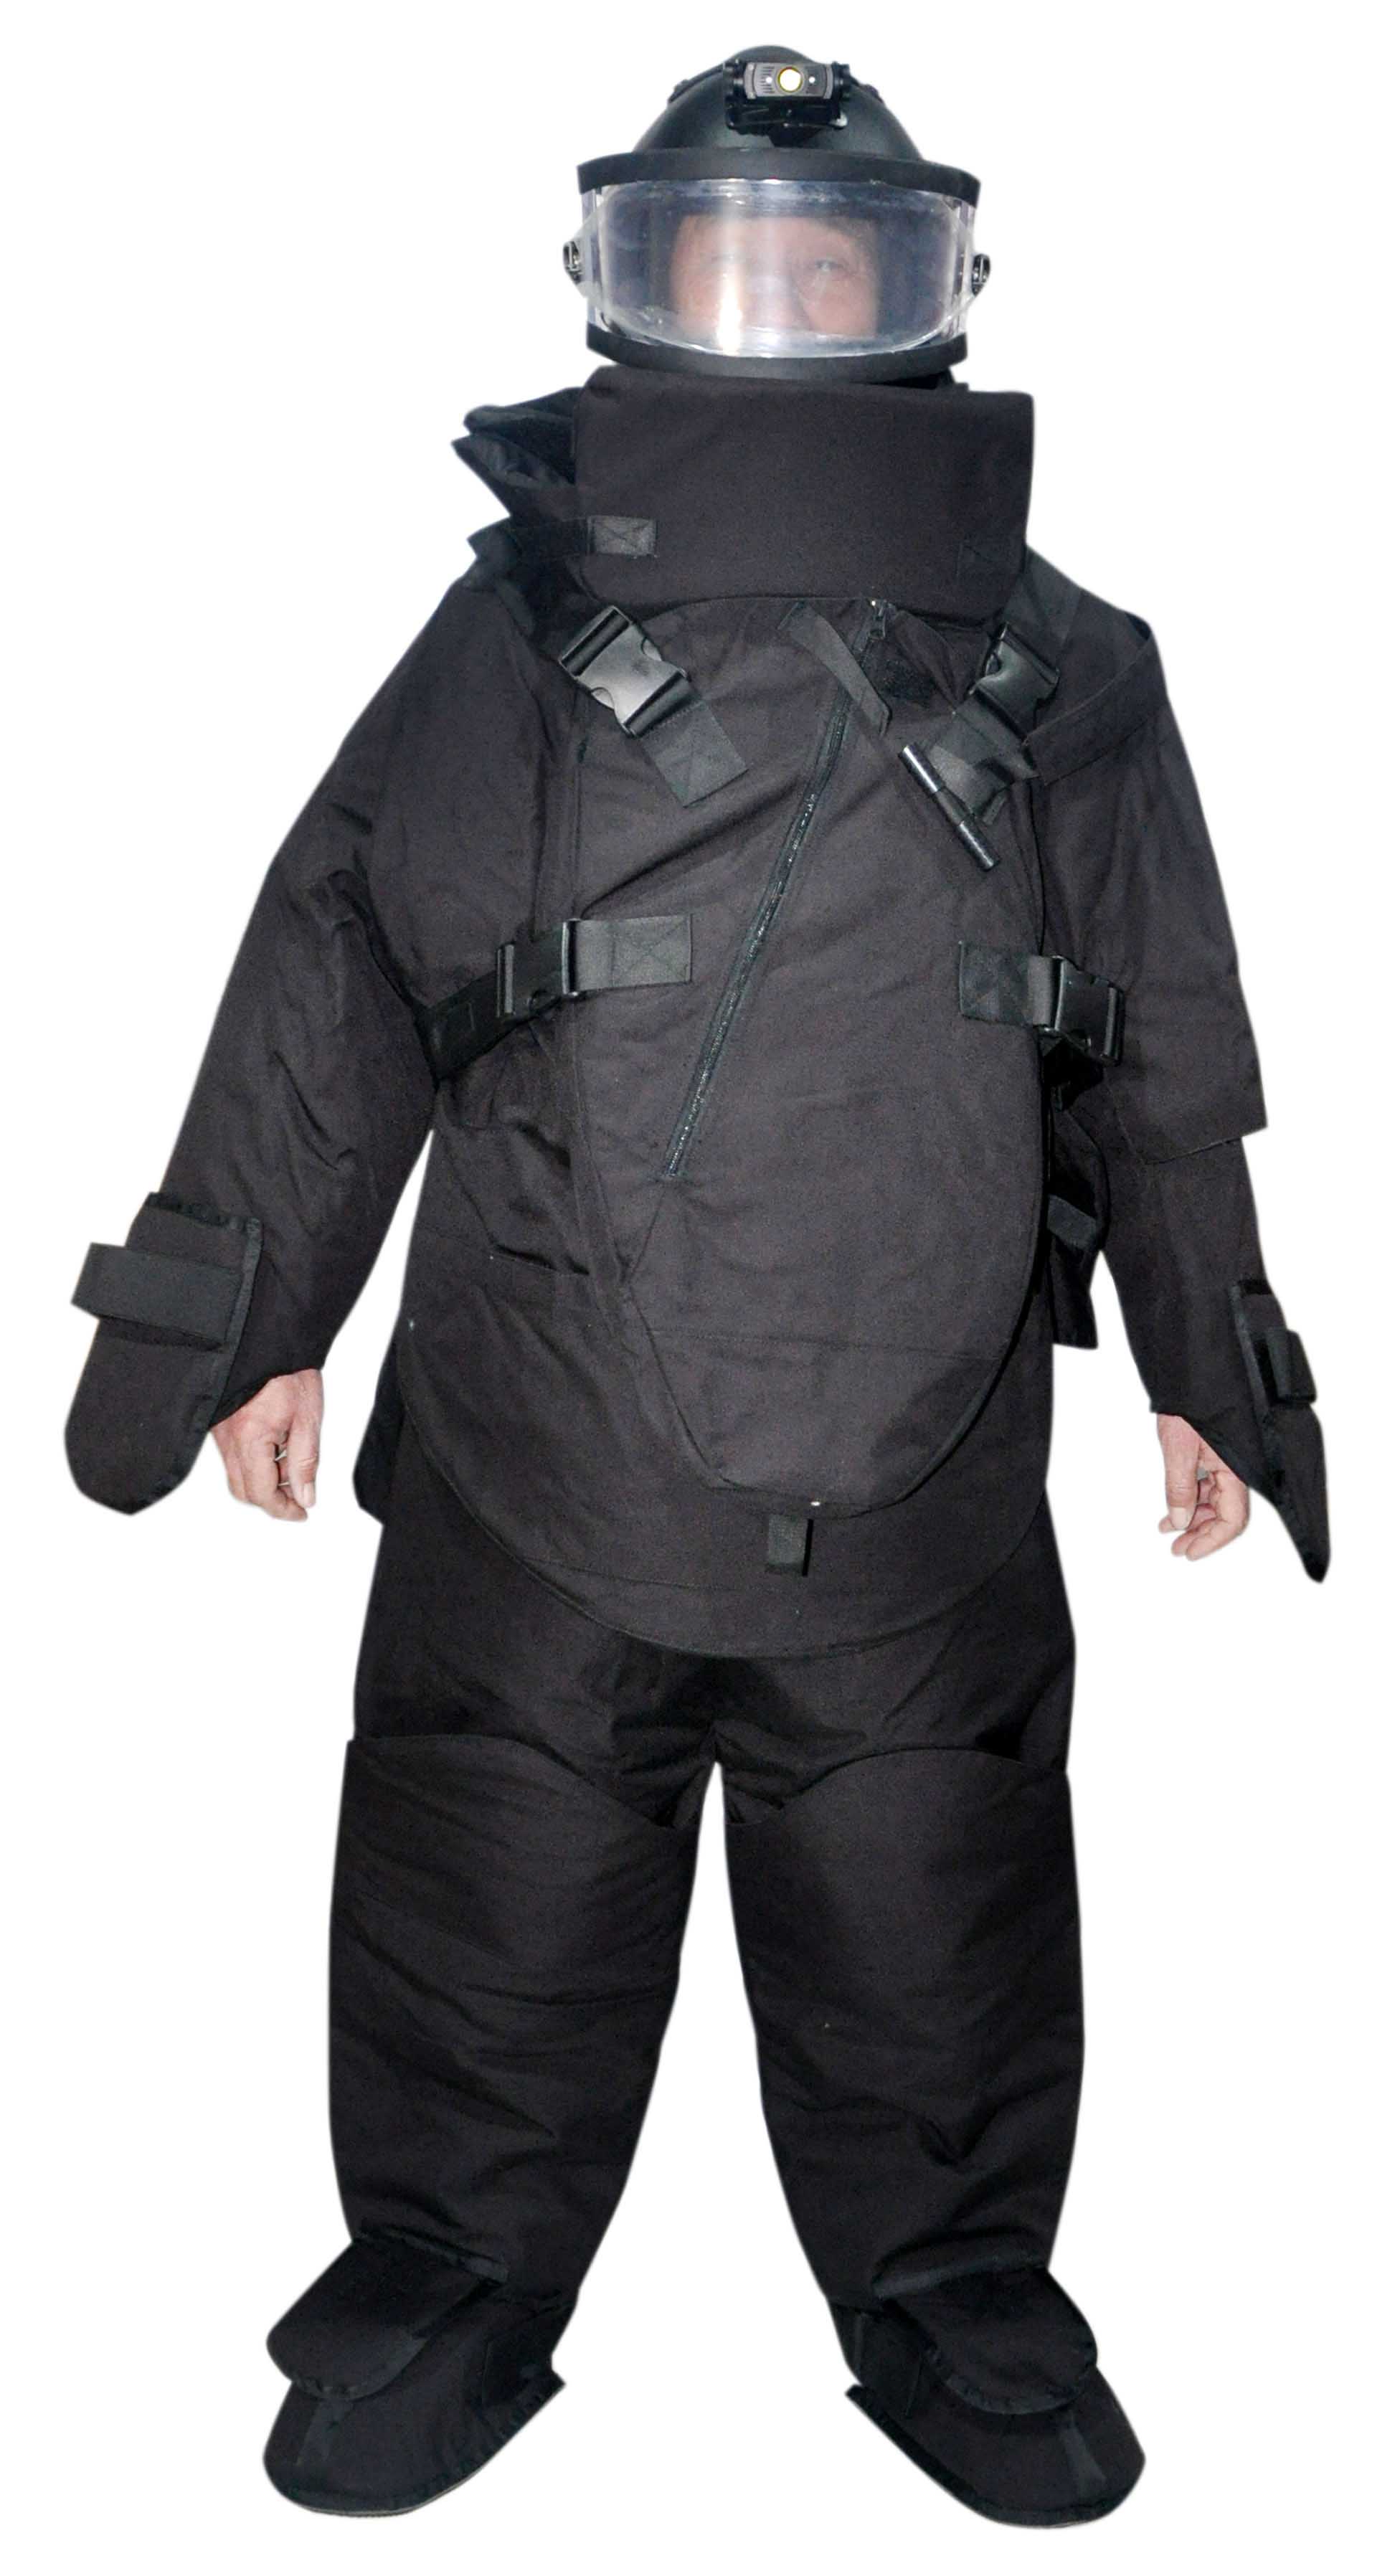 EOD bomb disposal suit